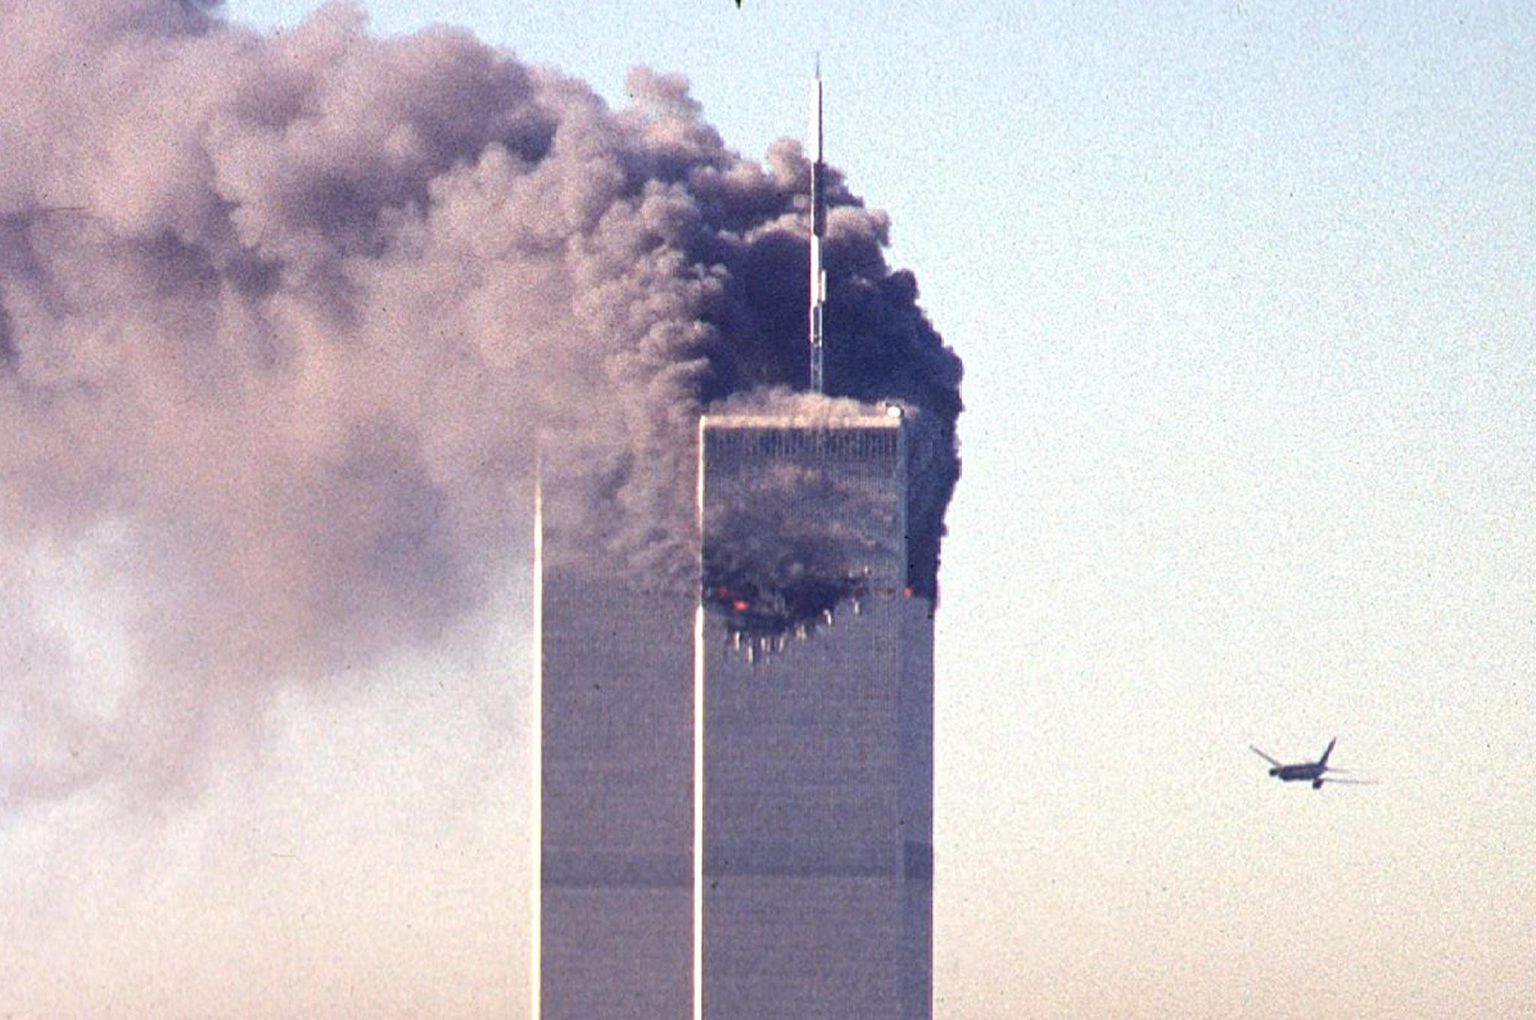 Terroristide lennukirünnakus  11. septembril 2001 kannatada saanud Maailma kaubanduskeskuse kaksiktornid, mis lõpuks varisesid